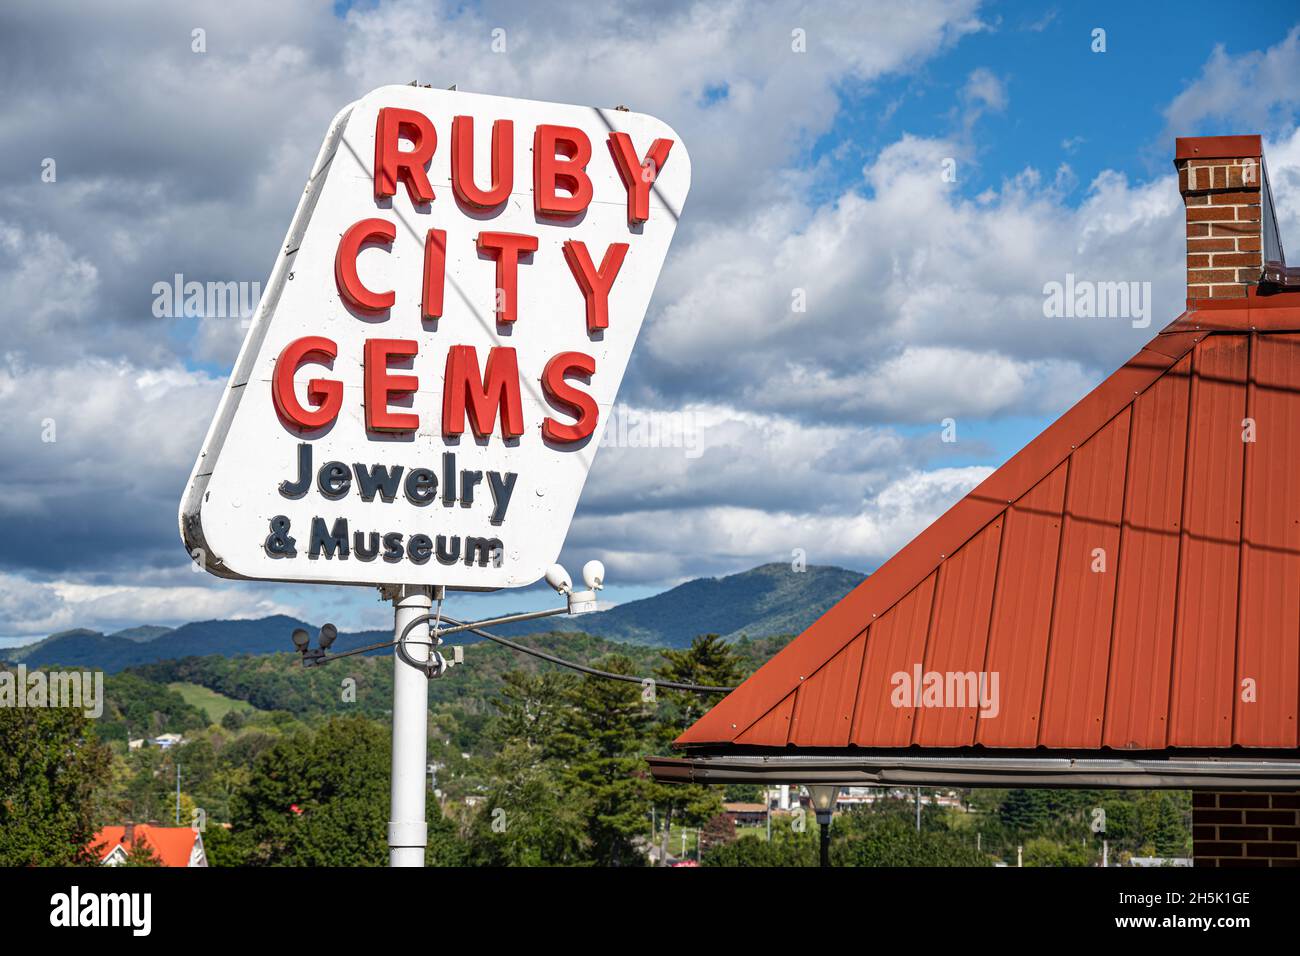 Ruby City Gems in der Innenstadt von Franklin, North Carolina, bietet eine Sammlung von Edelsteinen, Mineralien, Fossilien, indianischen und präkolumbianischen Artefakten. Stockfoto